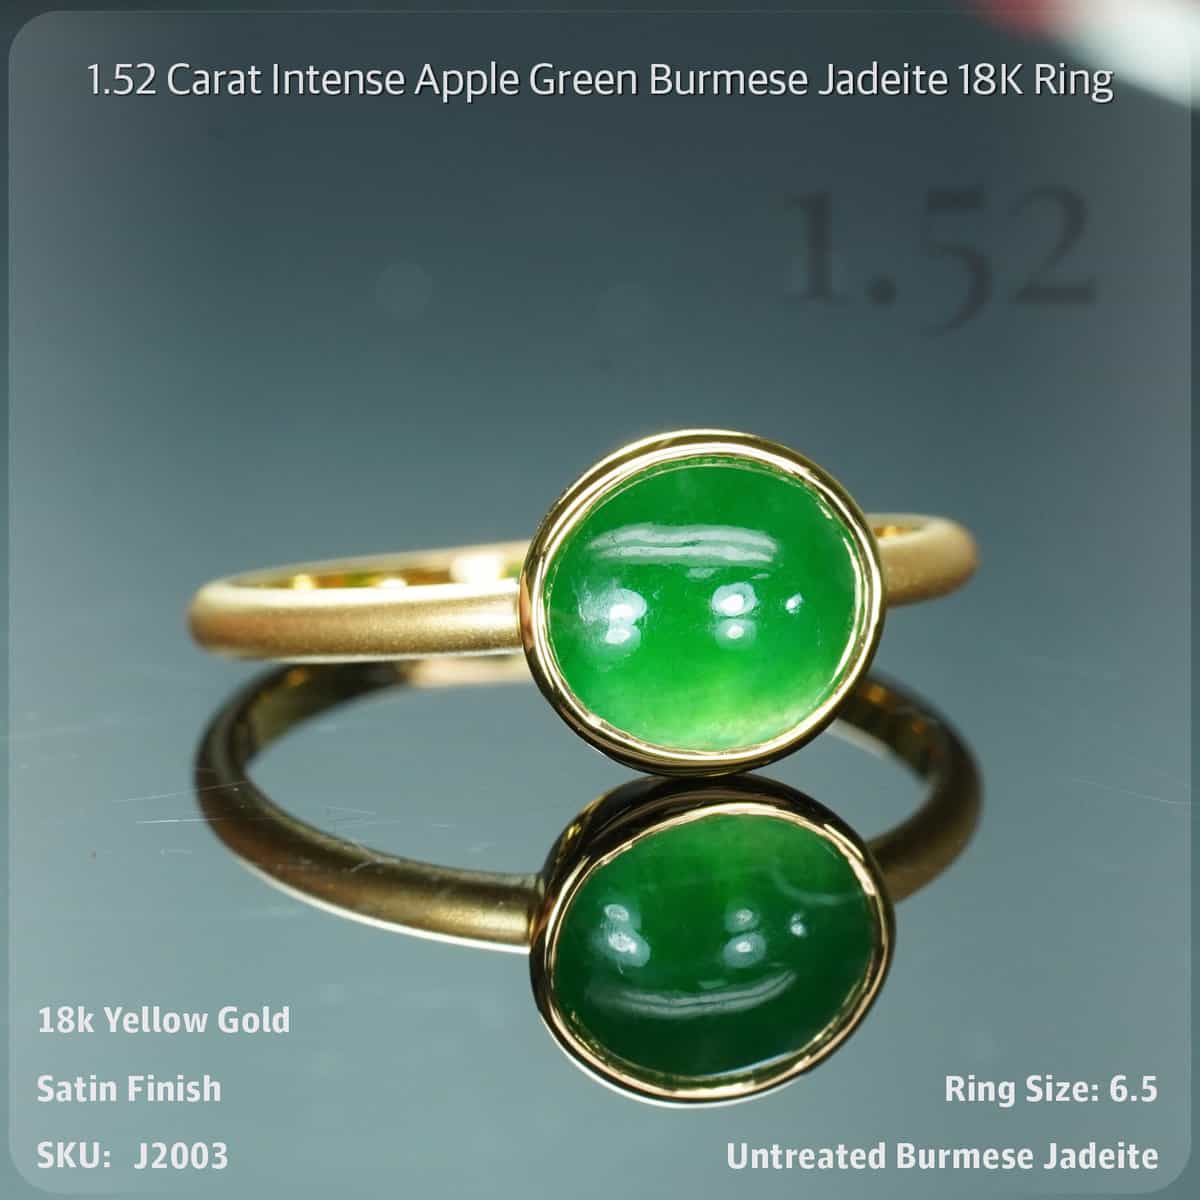 1.52 Carat Intense Apple Green Burmese Jadeite 18K Ring